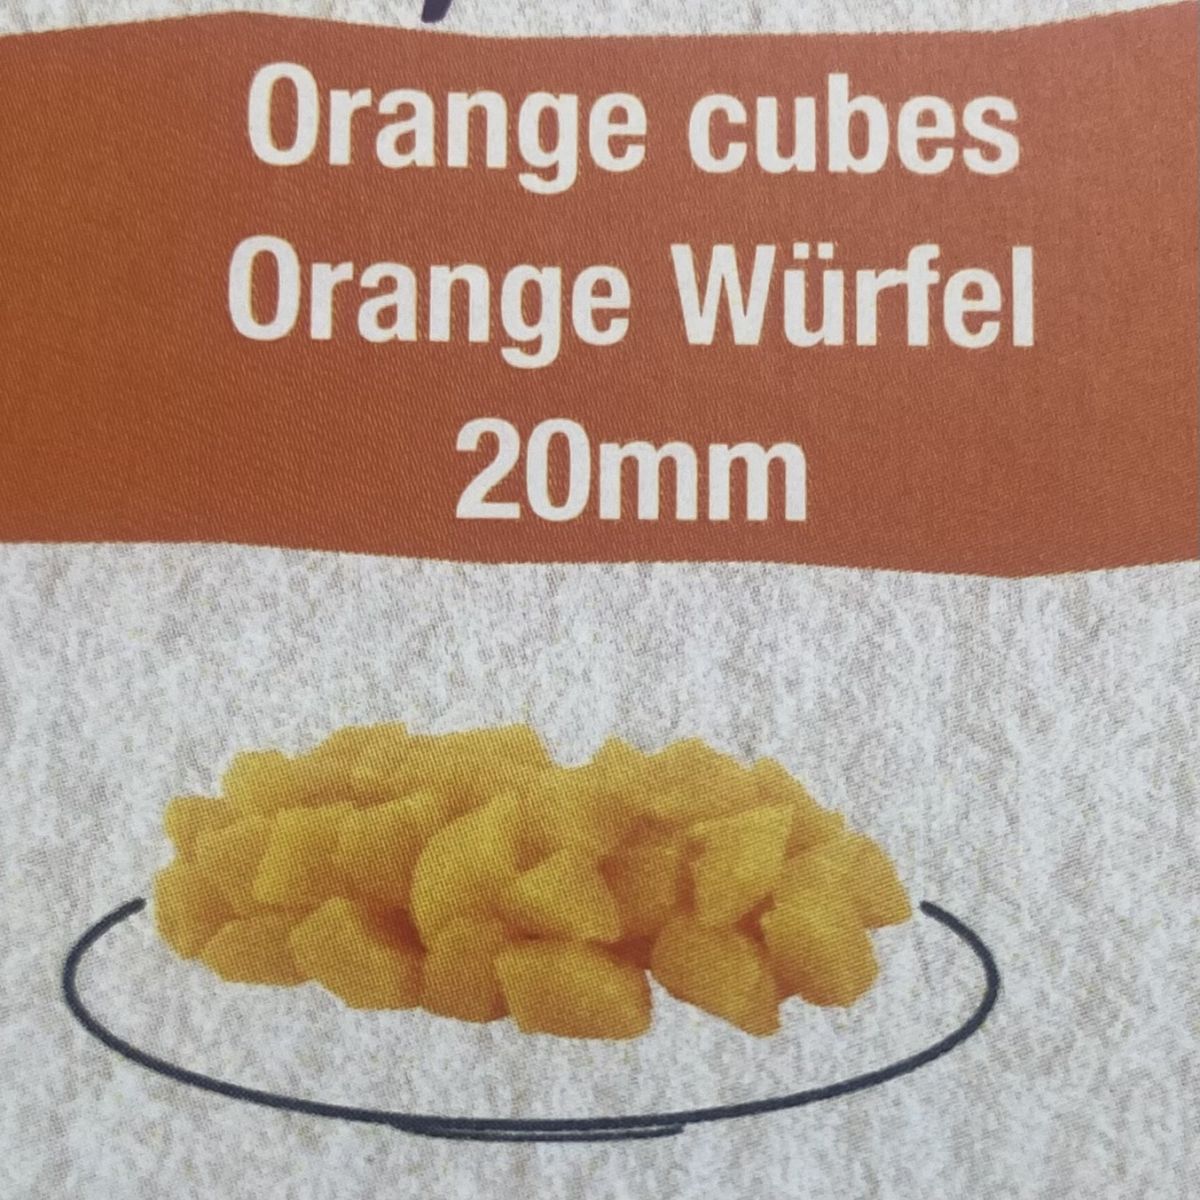 Oranges Cubes 20mm 3 Kg